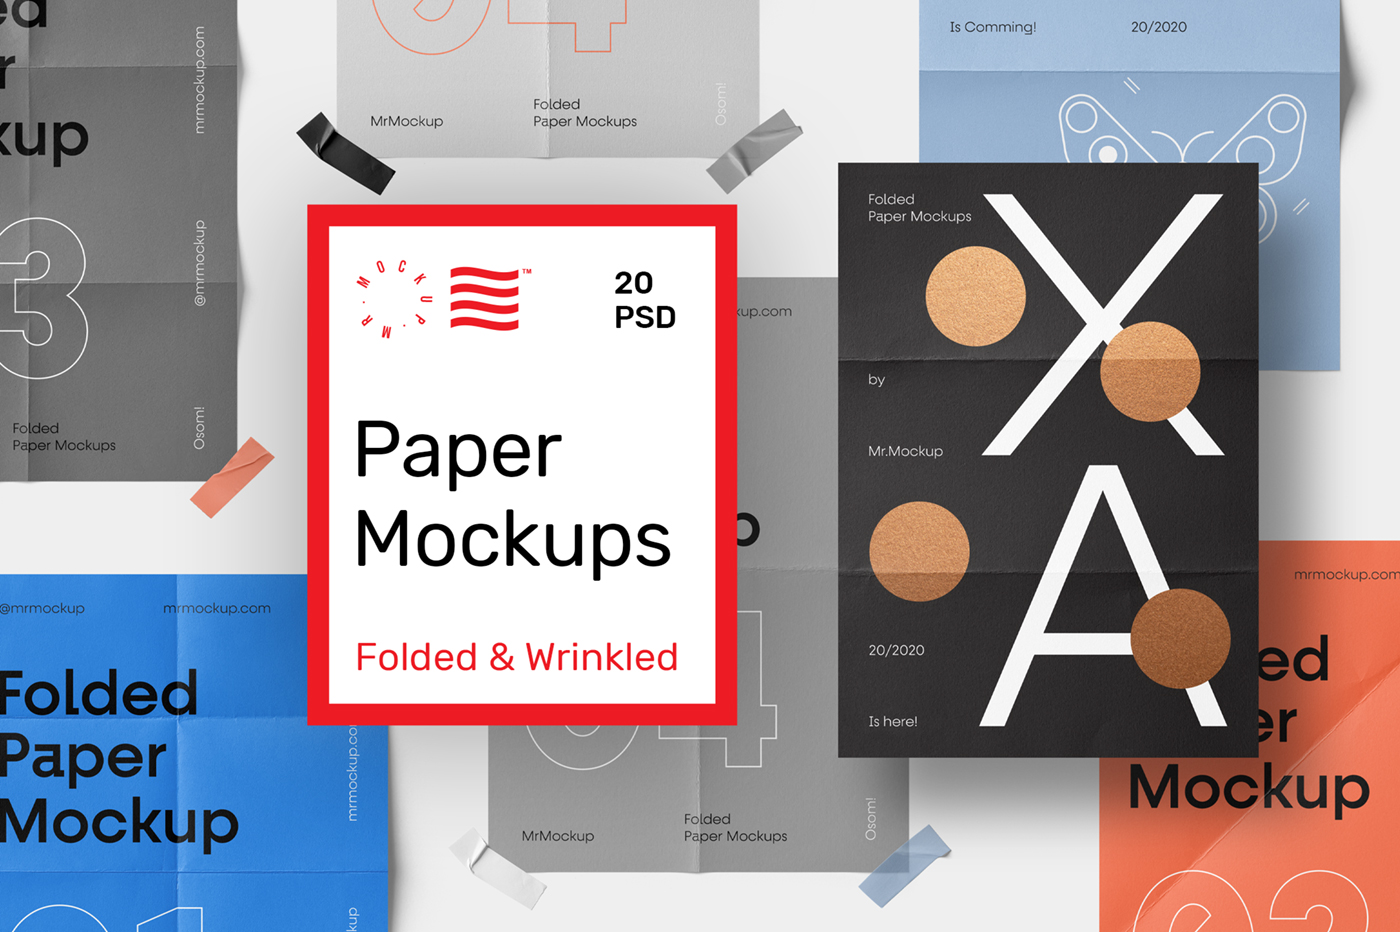 Download Folded Paper Mockups Psd Mockups Freebies Mr Mockup